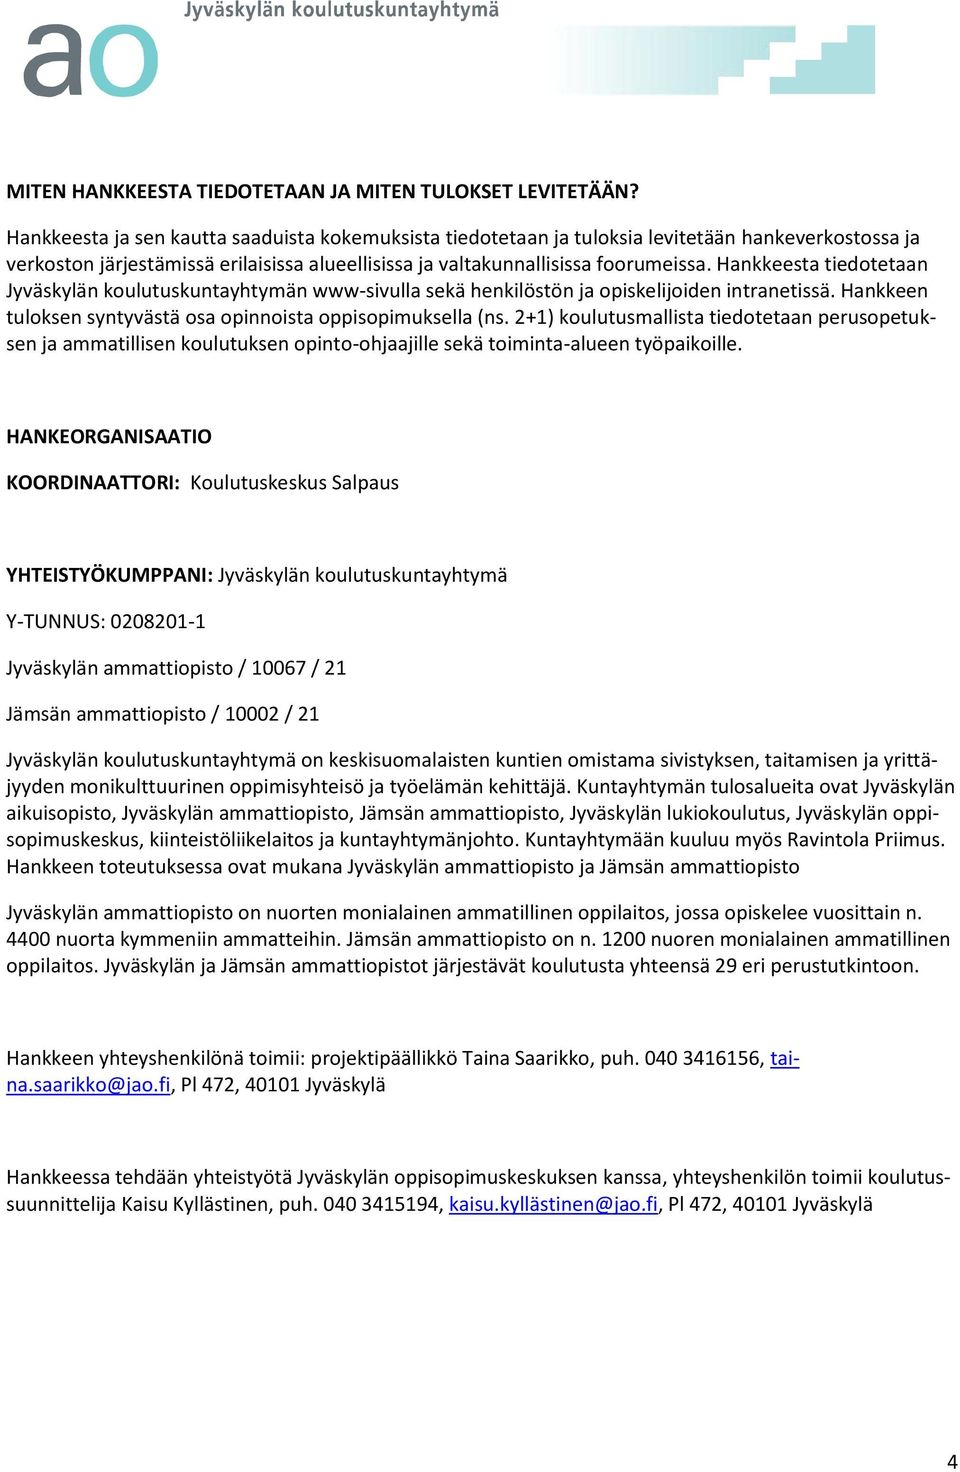 Hankkeesta tiedotetaan Jyväskylän koulutuskuntayhtymän www-sivulla sekä henkilöstön ja opiskelijoiden intranetissä. Hankkeen tuloksen syntyvästä osa opinnoista oppisopimuksella (ns.